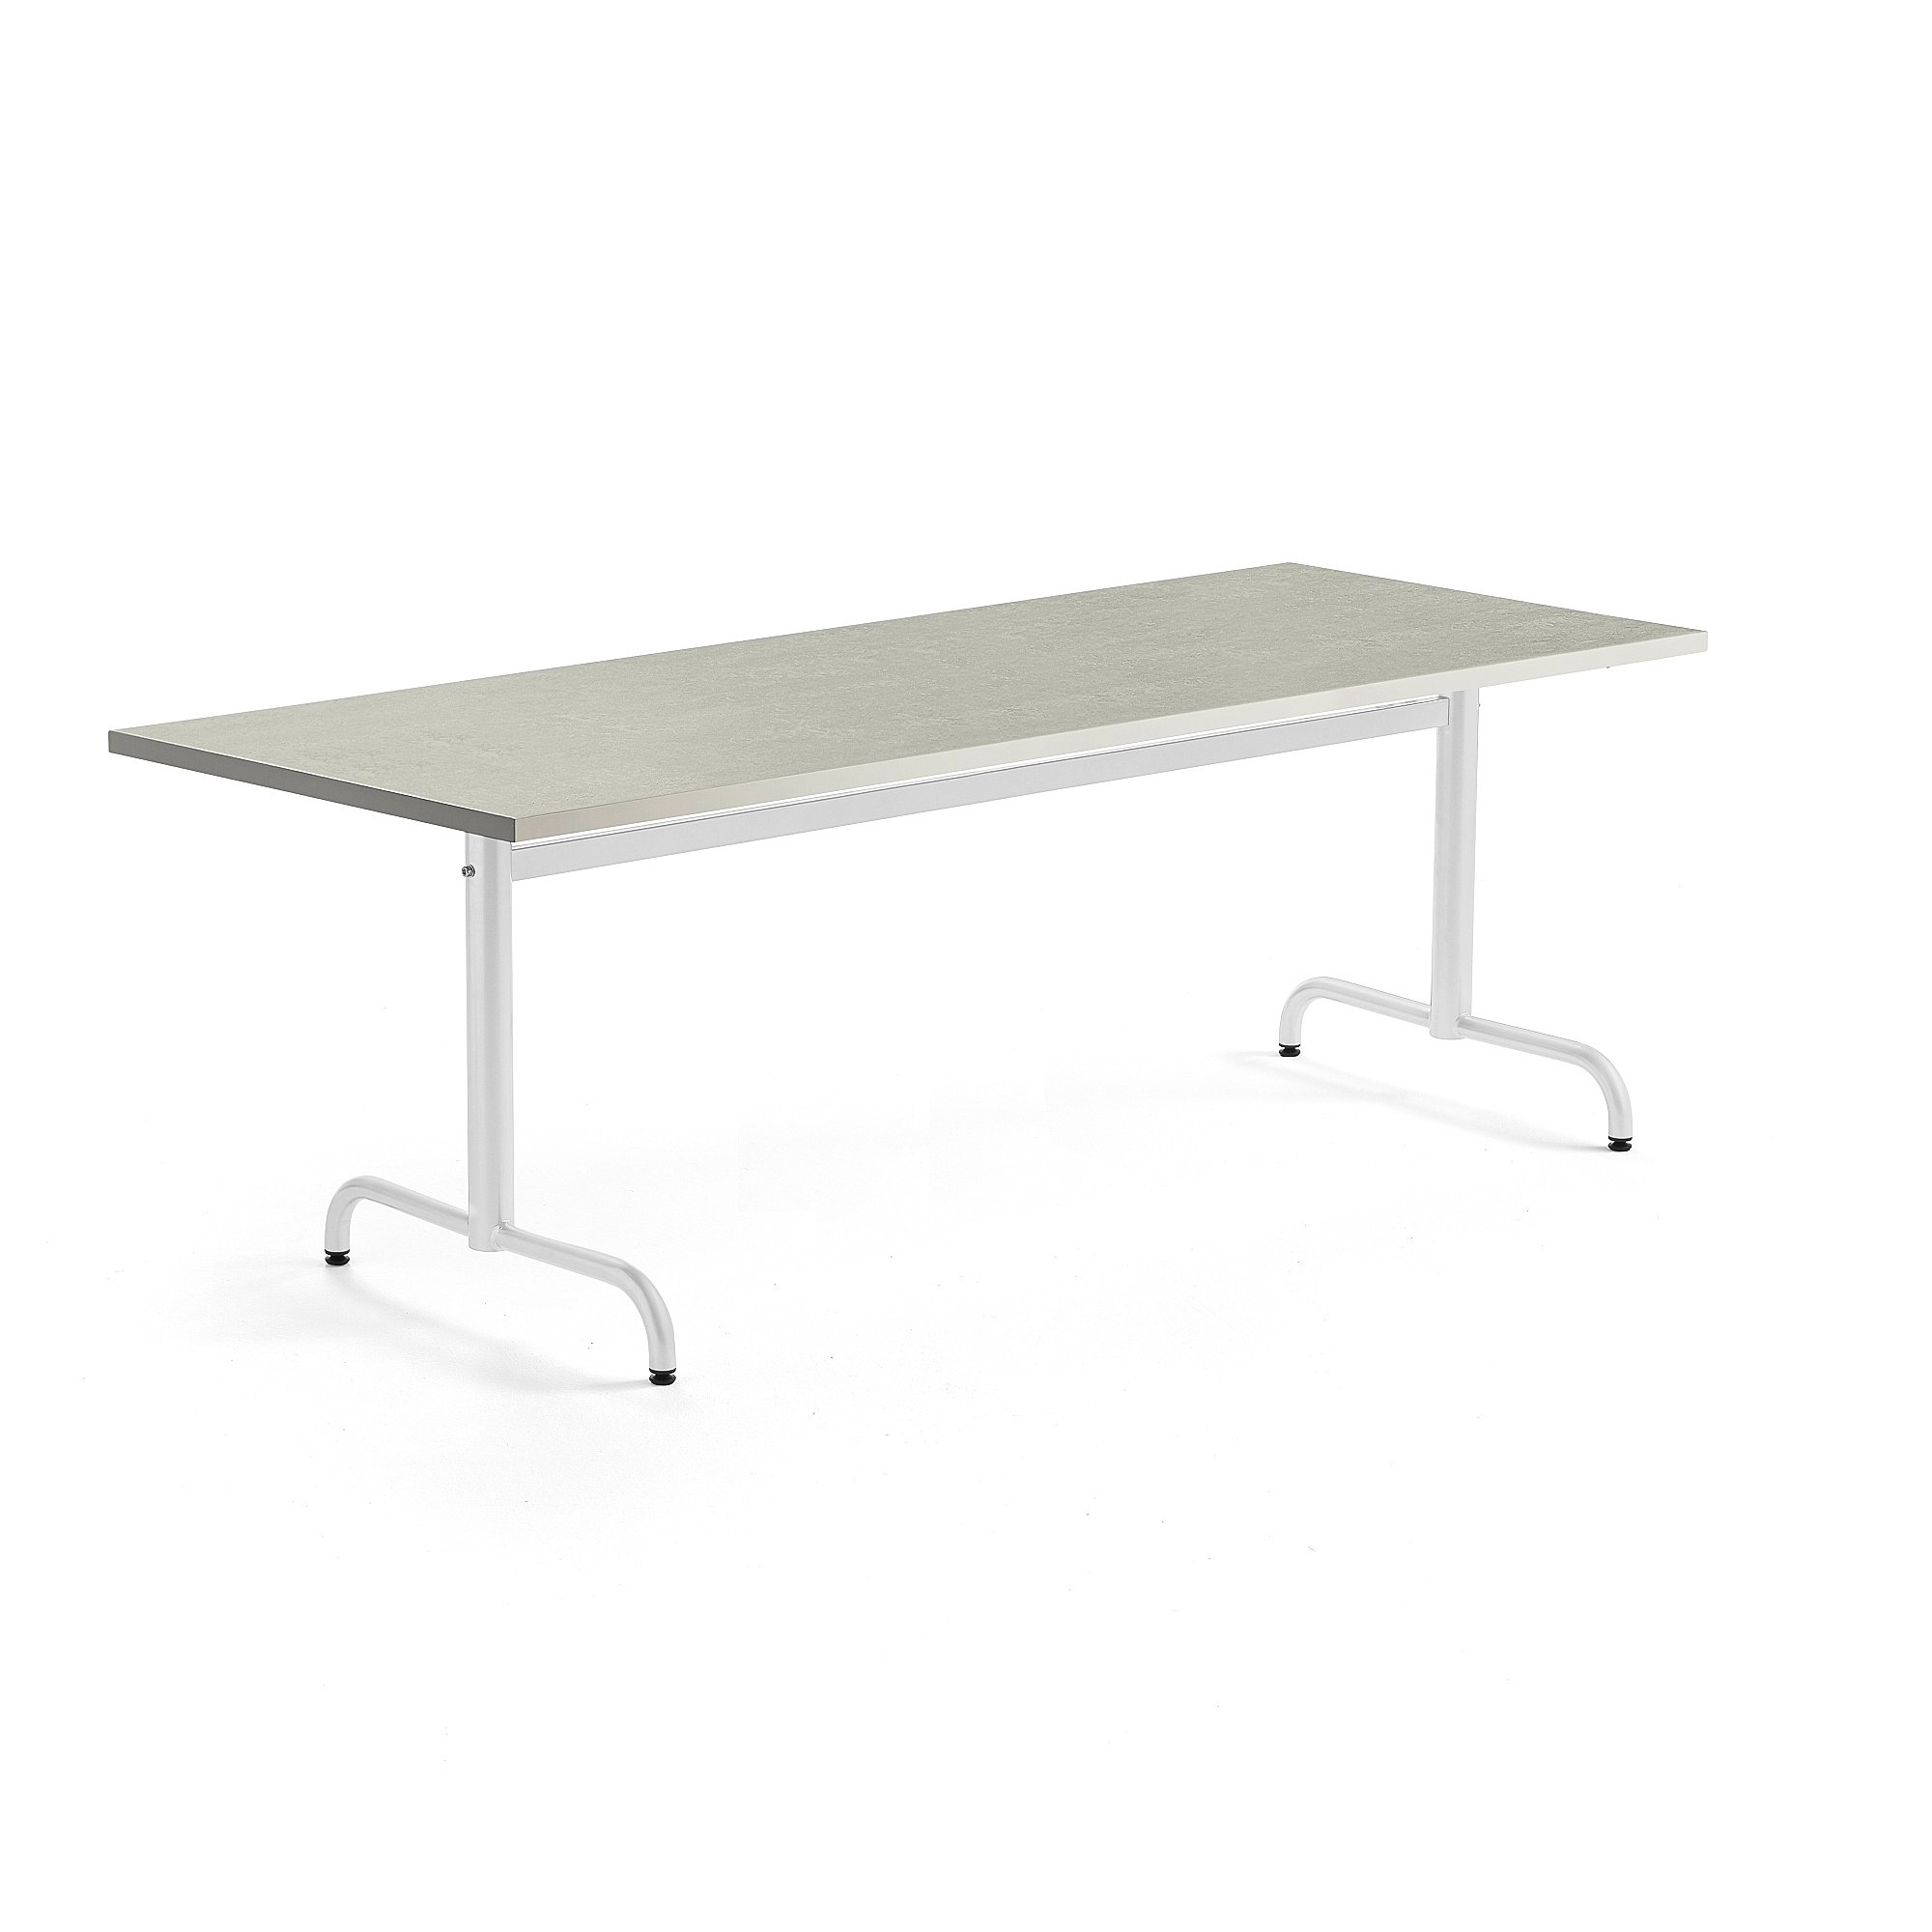 Stůl PLURAL, 1800x800x720 mm, linoleum, šedá, bílá